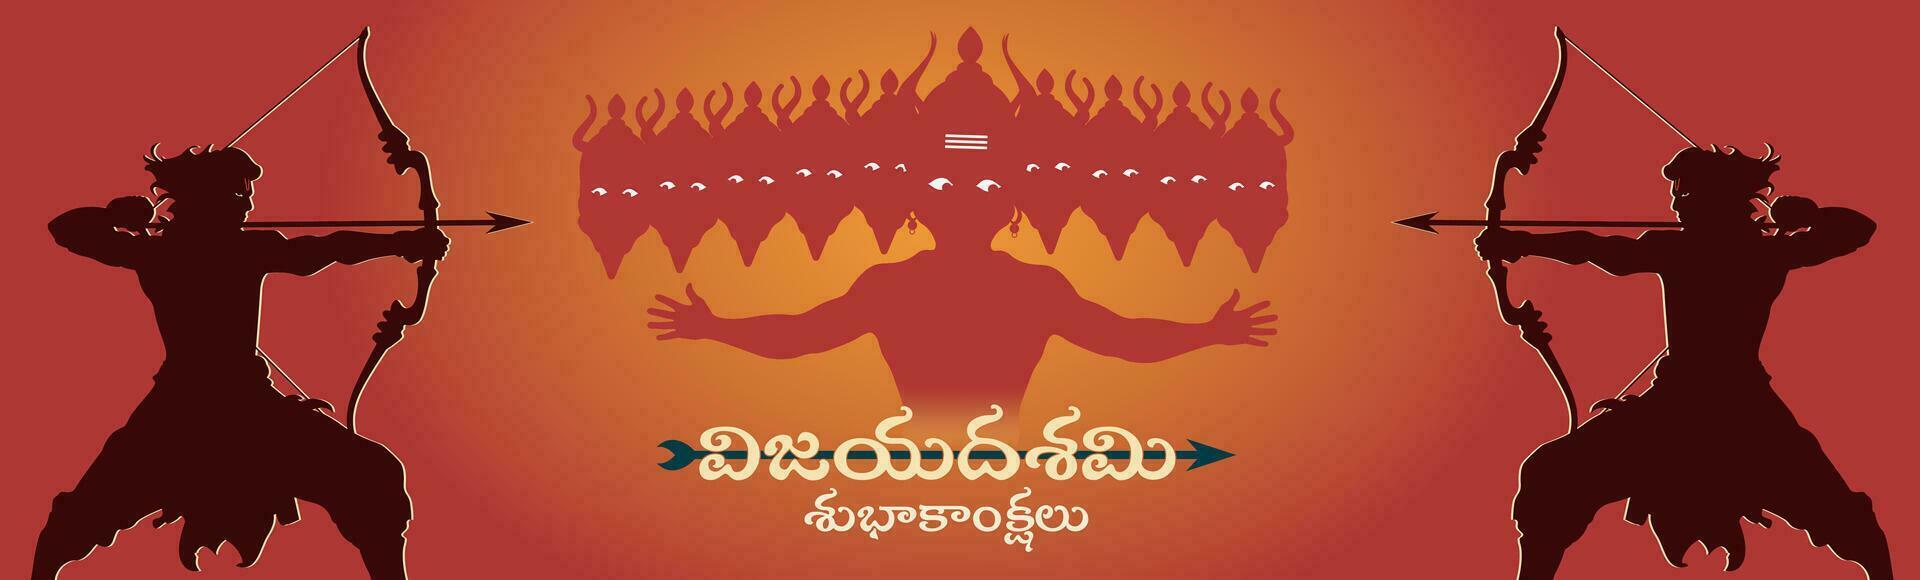 glücklich Dussehra Telugu Text Banner. Bogen und Pfeil, Hindu navratri Festival, Vijayadashami Urlaub. Vektor Illustration.